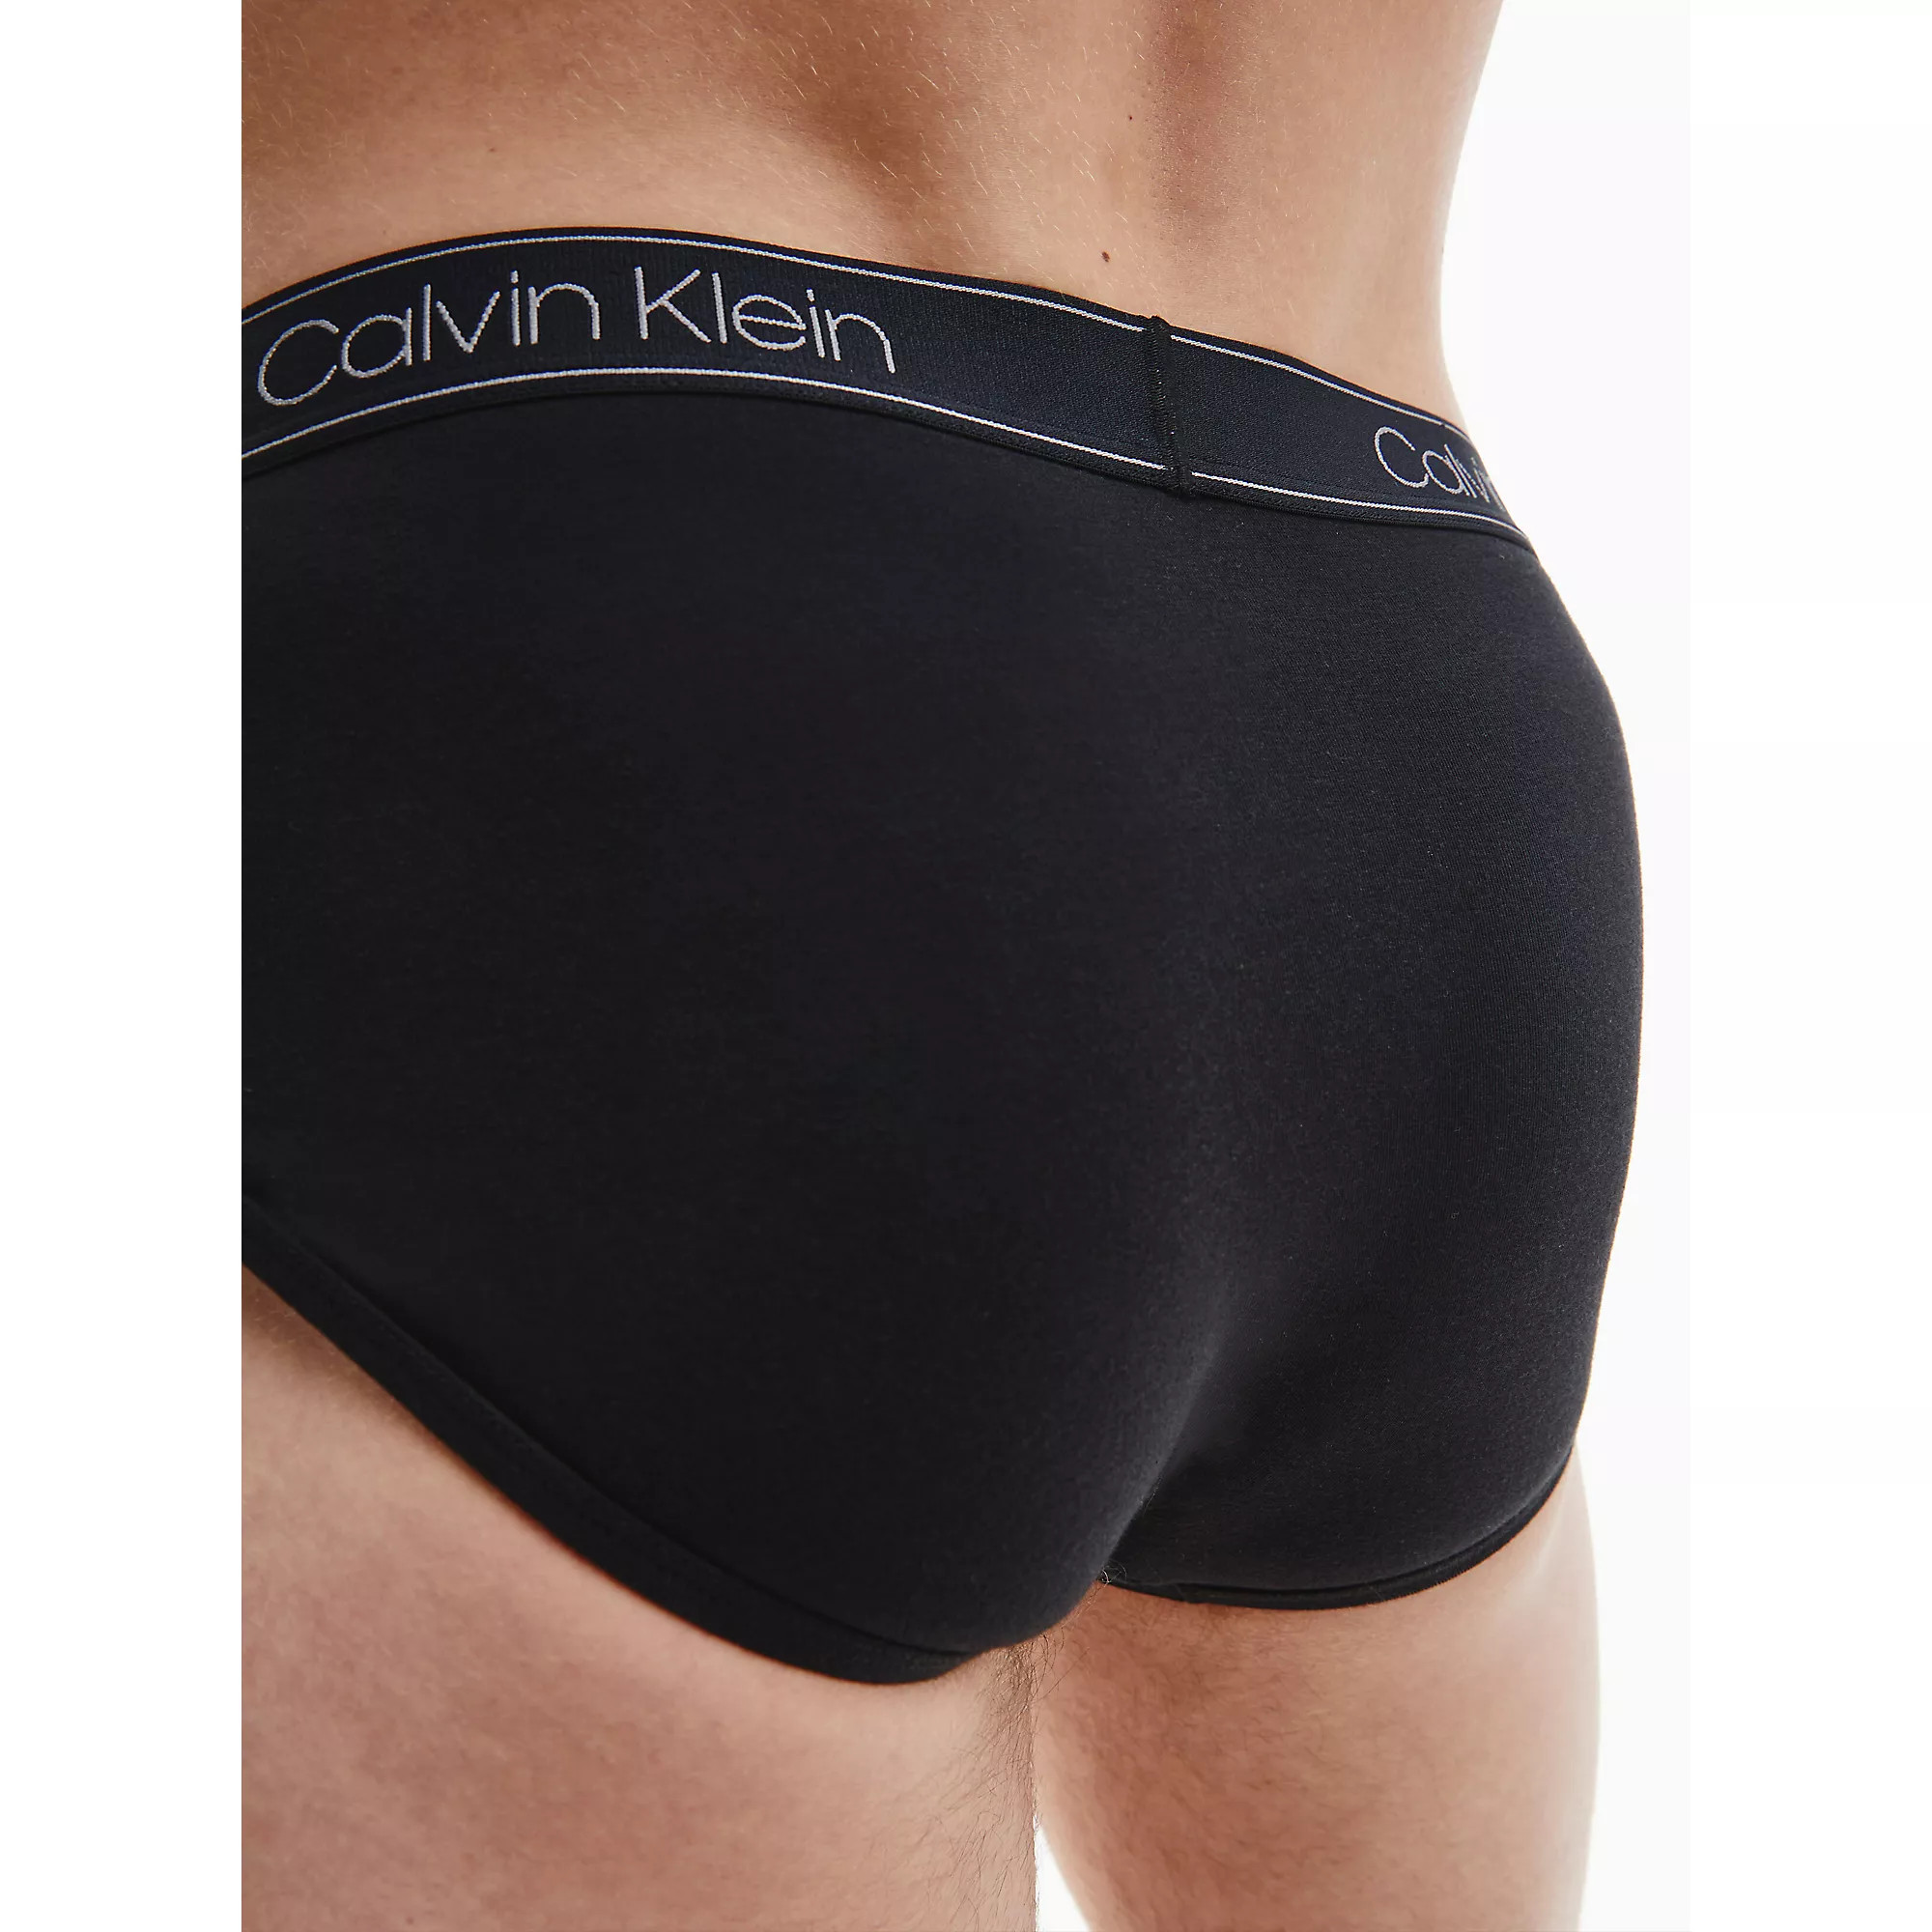 Spodní prádlo Pánské spodní prádlo CONTOUR POUCH BRIEF 000NB2863AUB1 - Calvin Klein XL